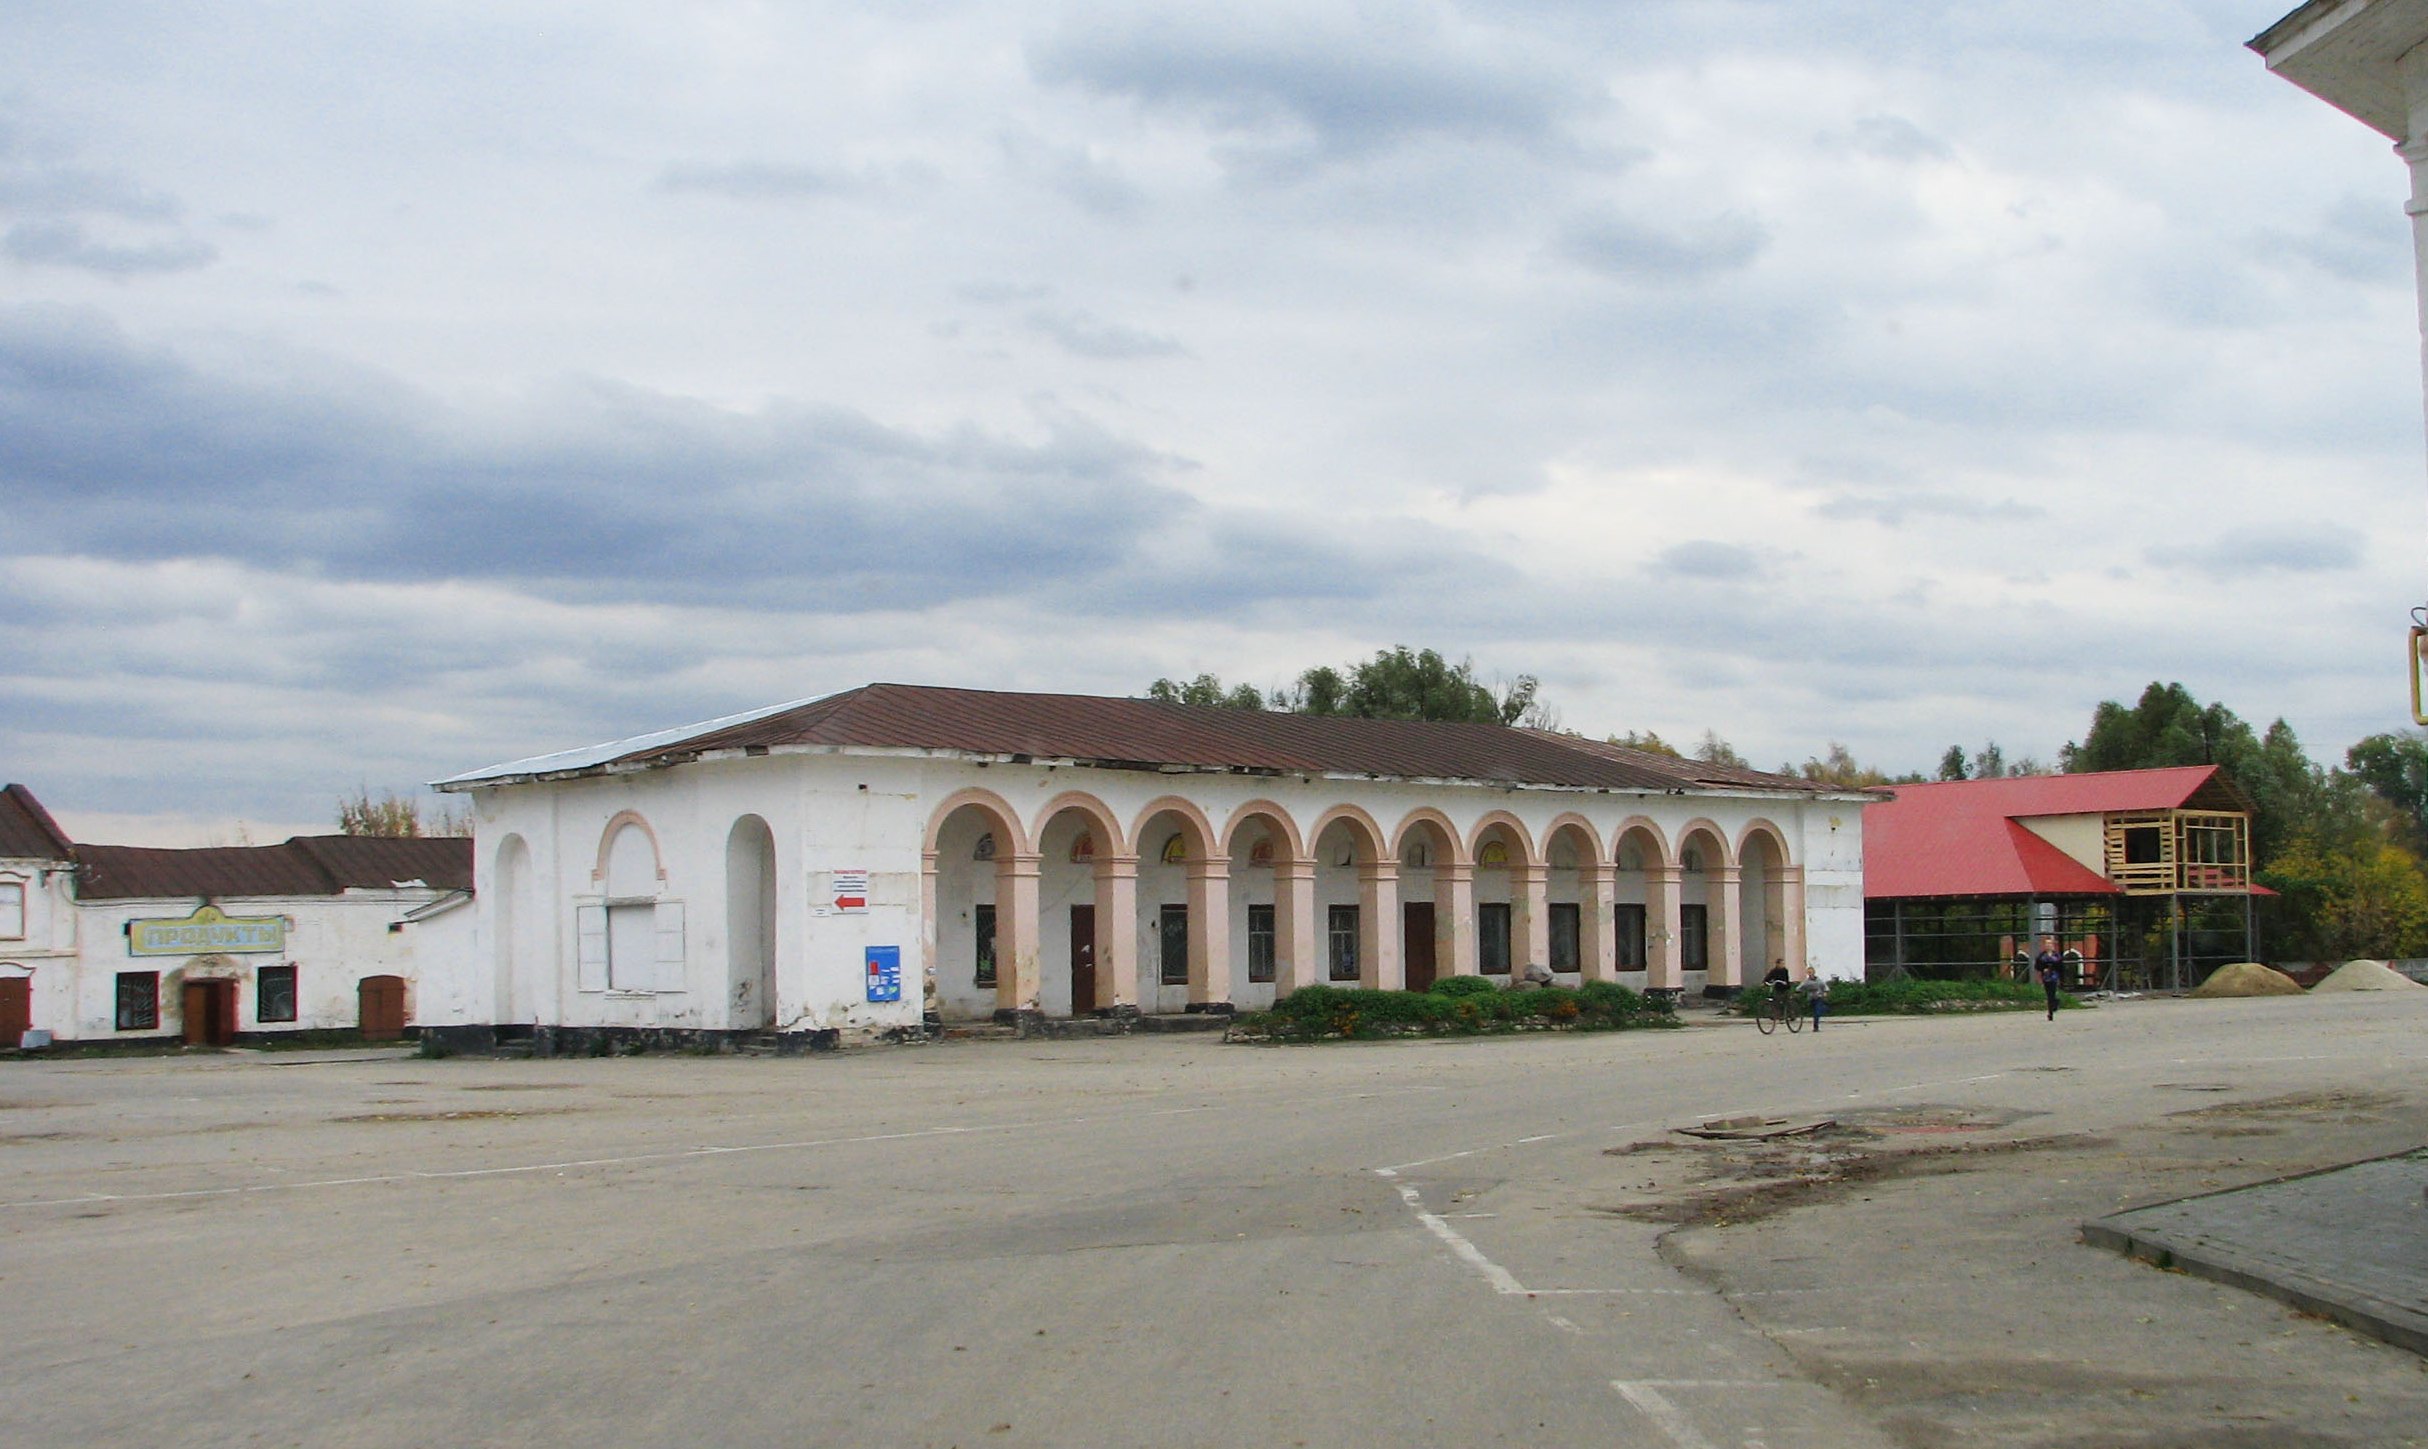 Пос. Ела́тьма Касимовский район Рязанской области. Осень 2012.